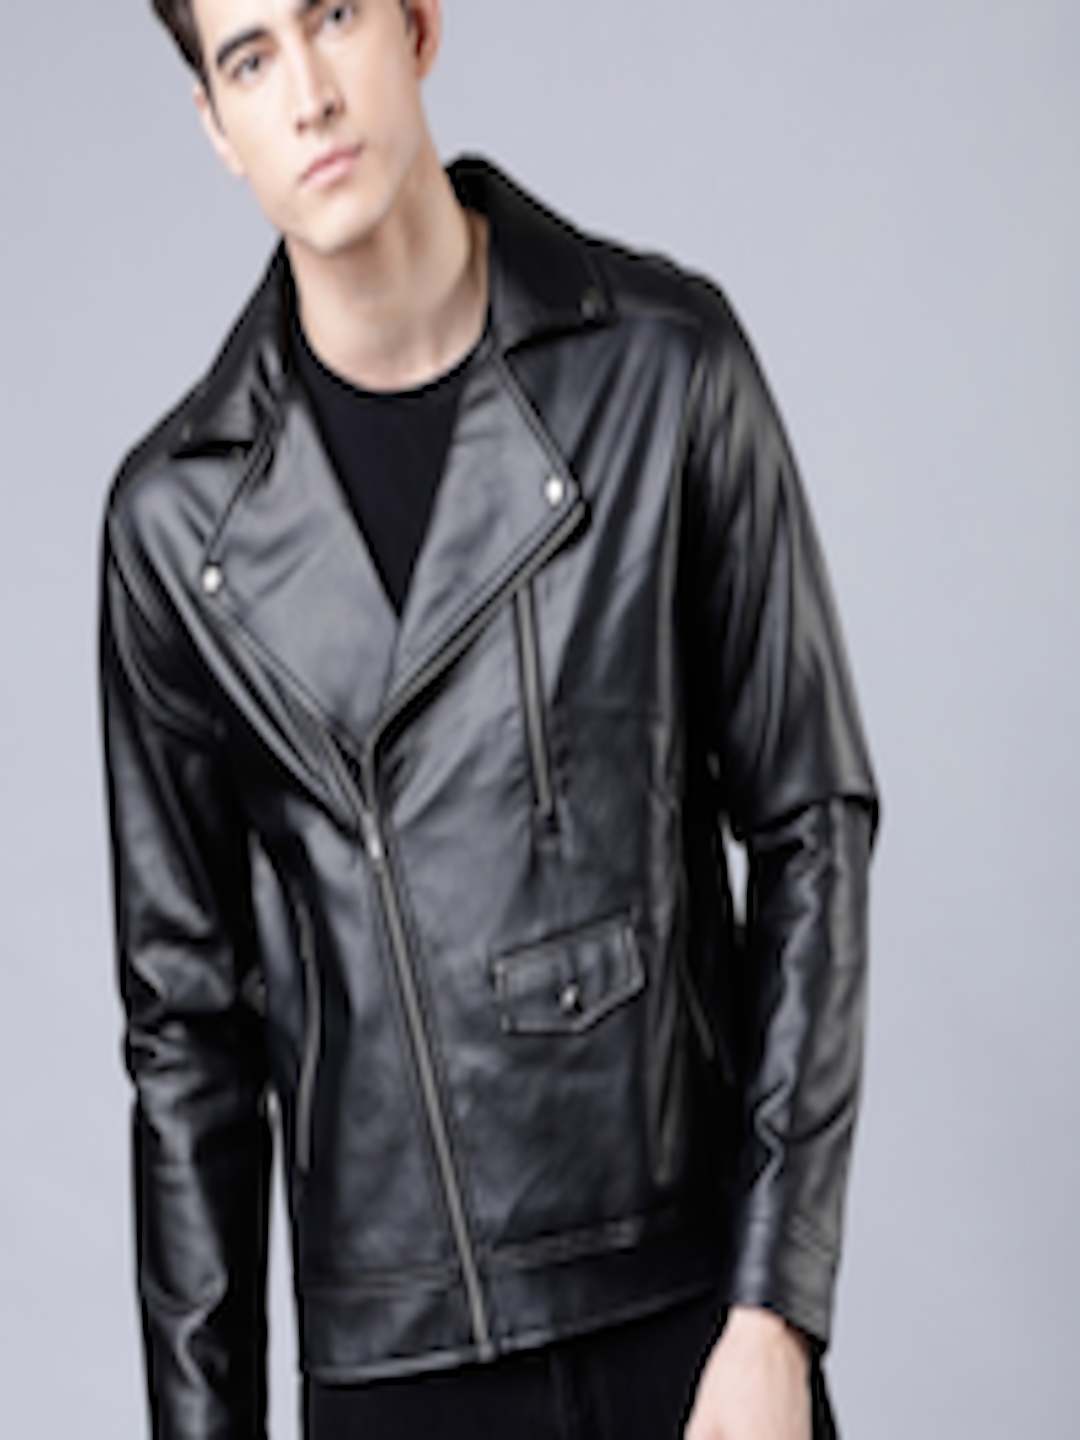 Buy HIGHLANDER Men Black Solid Leather Jacket - Jackets for Men ...